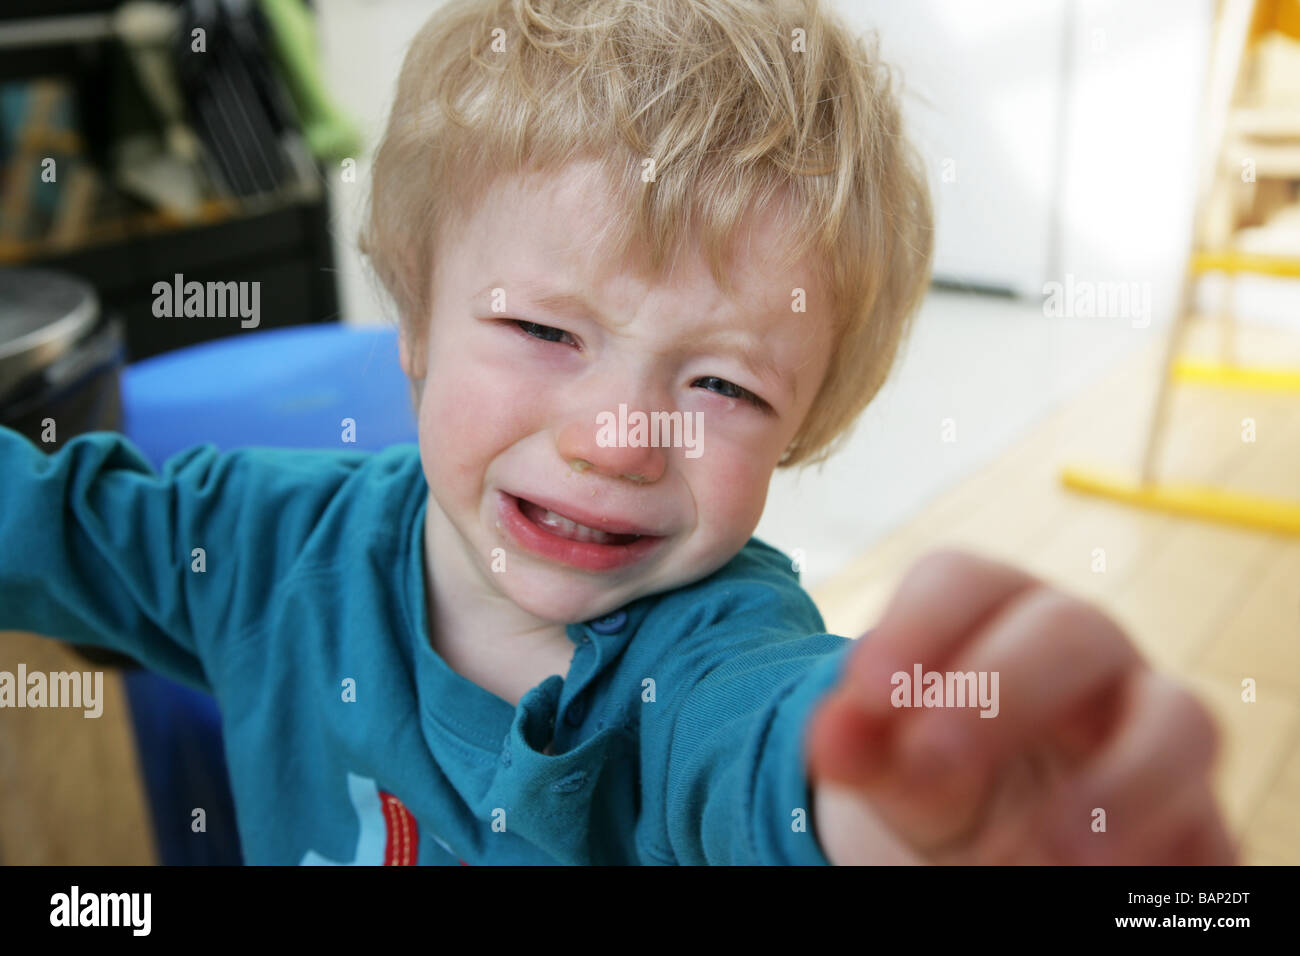 little boy unhappy Stock Photo